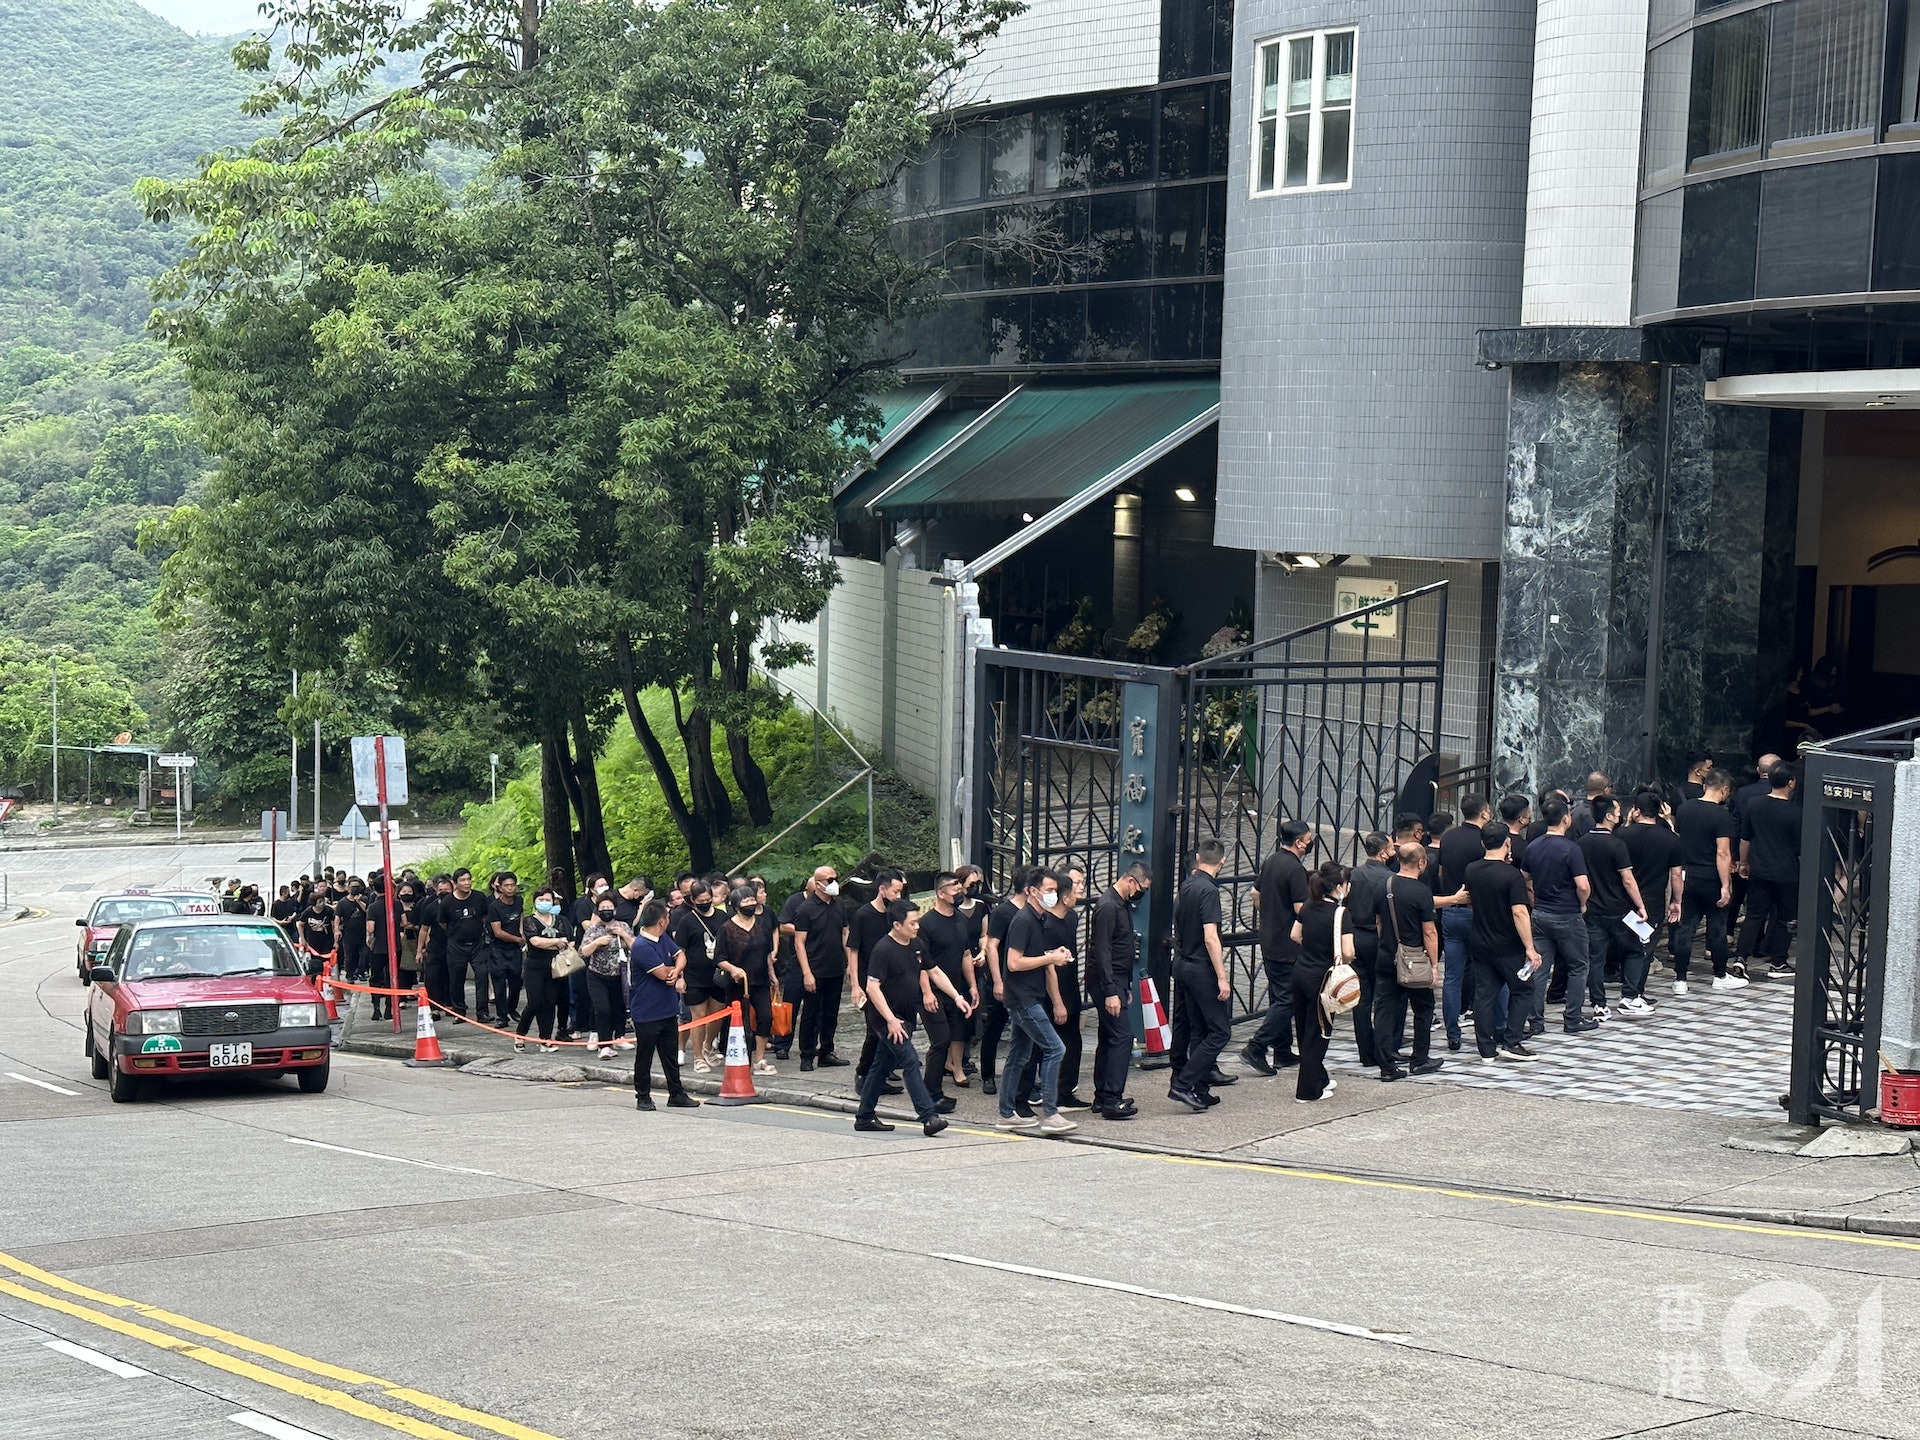 Đám đông xếp hàng dài đến viếng nữ người mẫu Hồng Kông bị giết hại, phân xác - Ảnh 7.